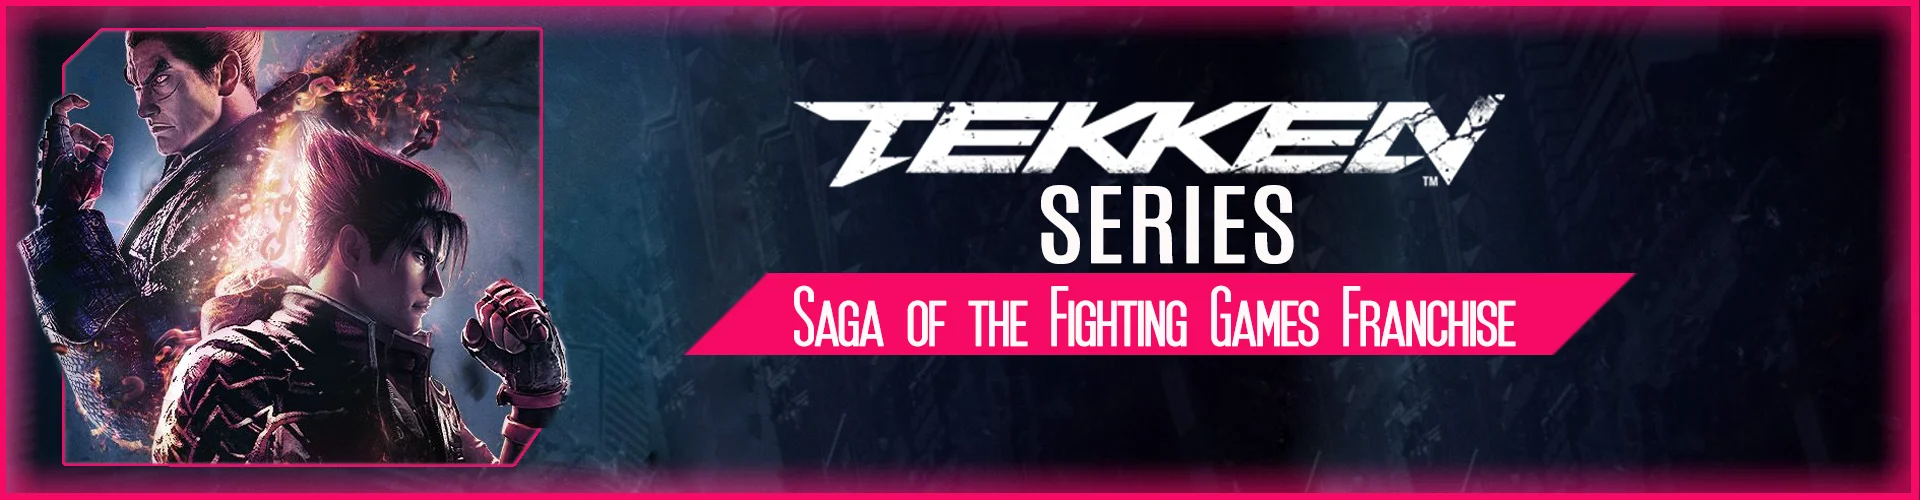 Tekken Serie: Saga of the Fighting Games Franchise